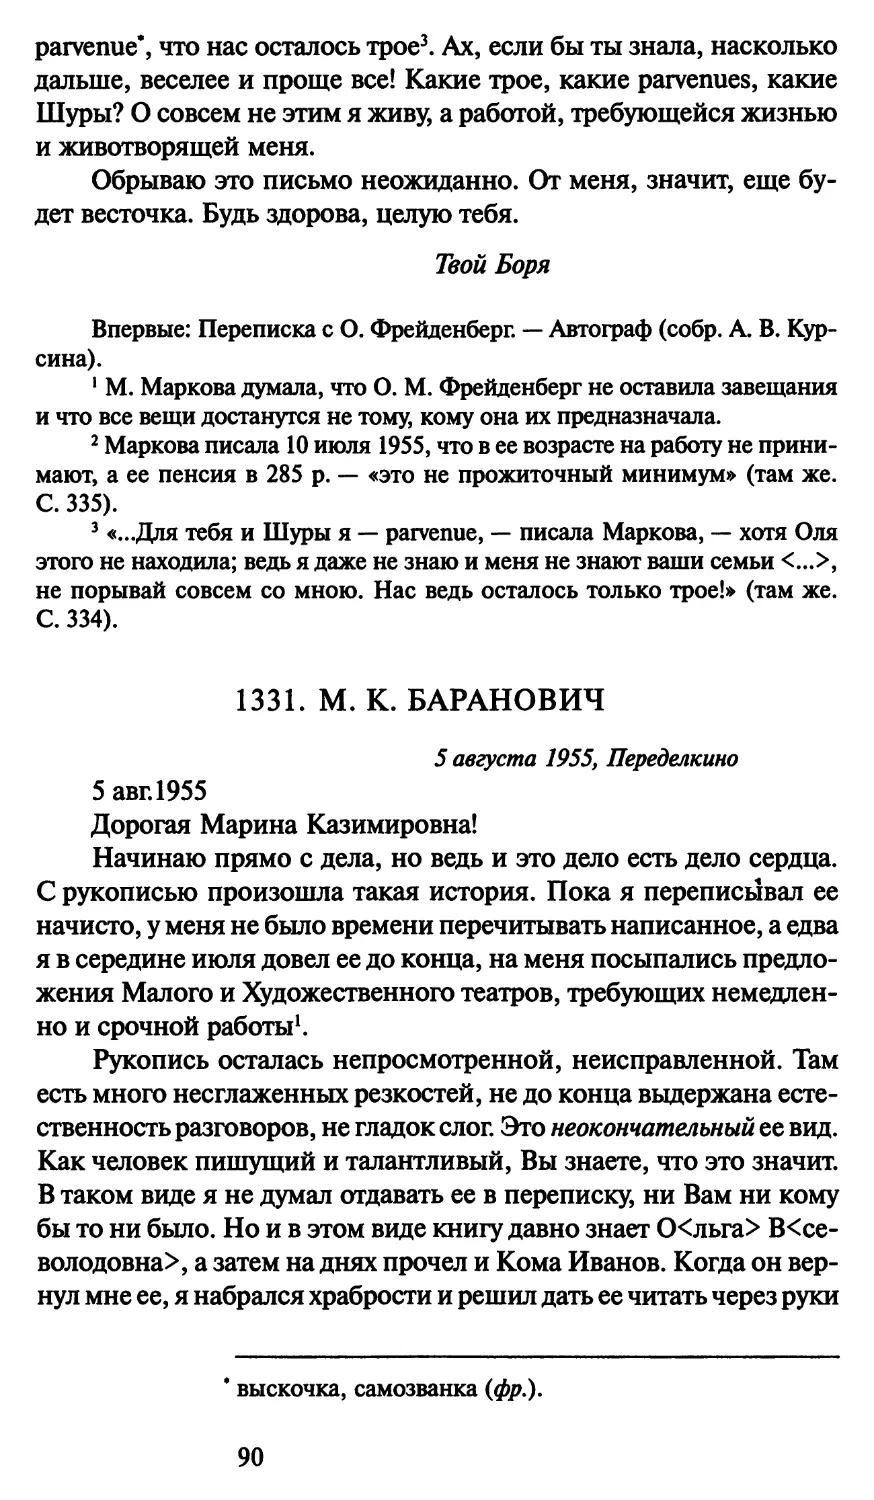 1331. М. К. Баранович 5 августа 1955